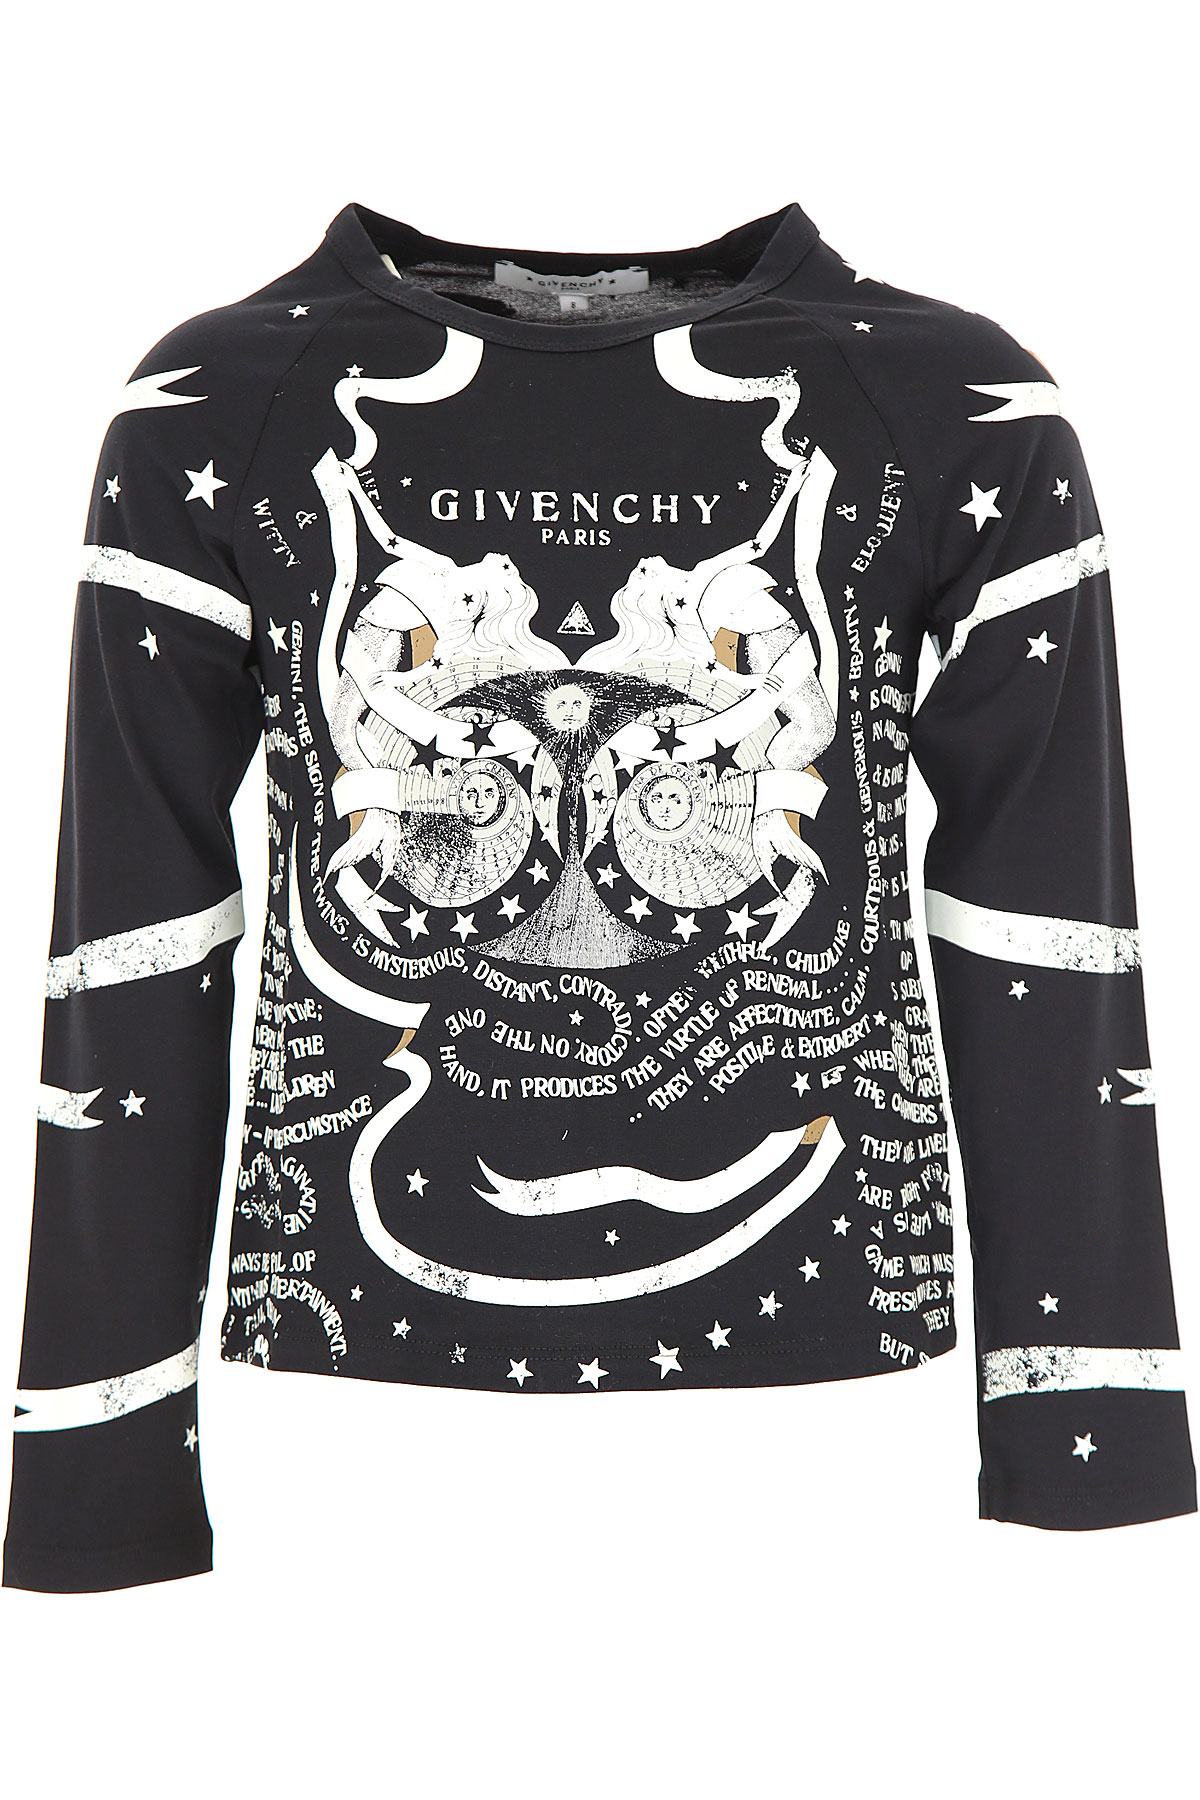 Givenchy Kinder T-Shirt für Mädchen Günstig im Sale, Schwarz, Baumwolle, 2017, 10Y 12Y 14Y 4Y 6Y 8Y